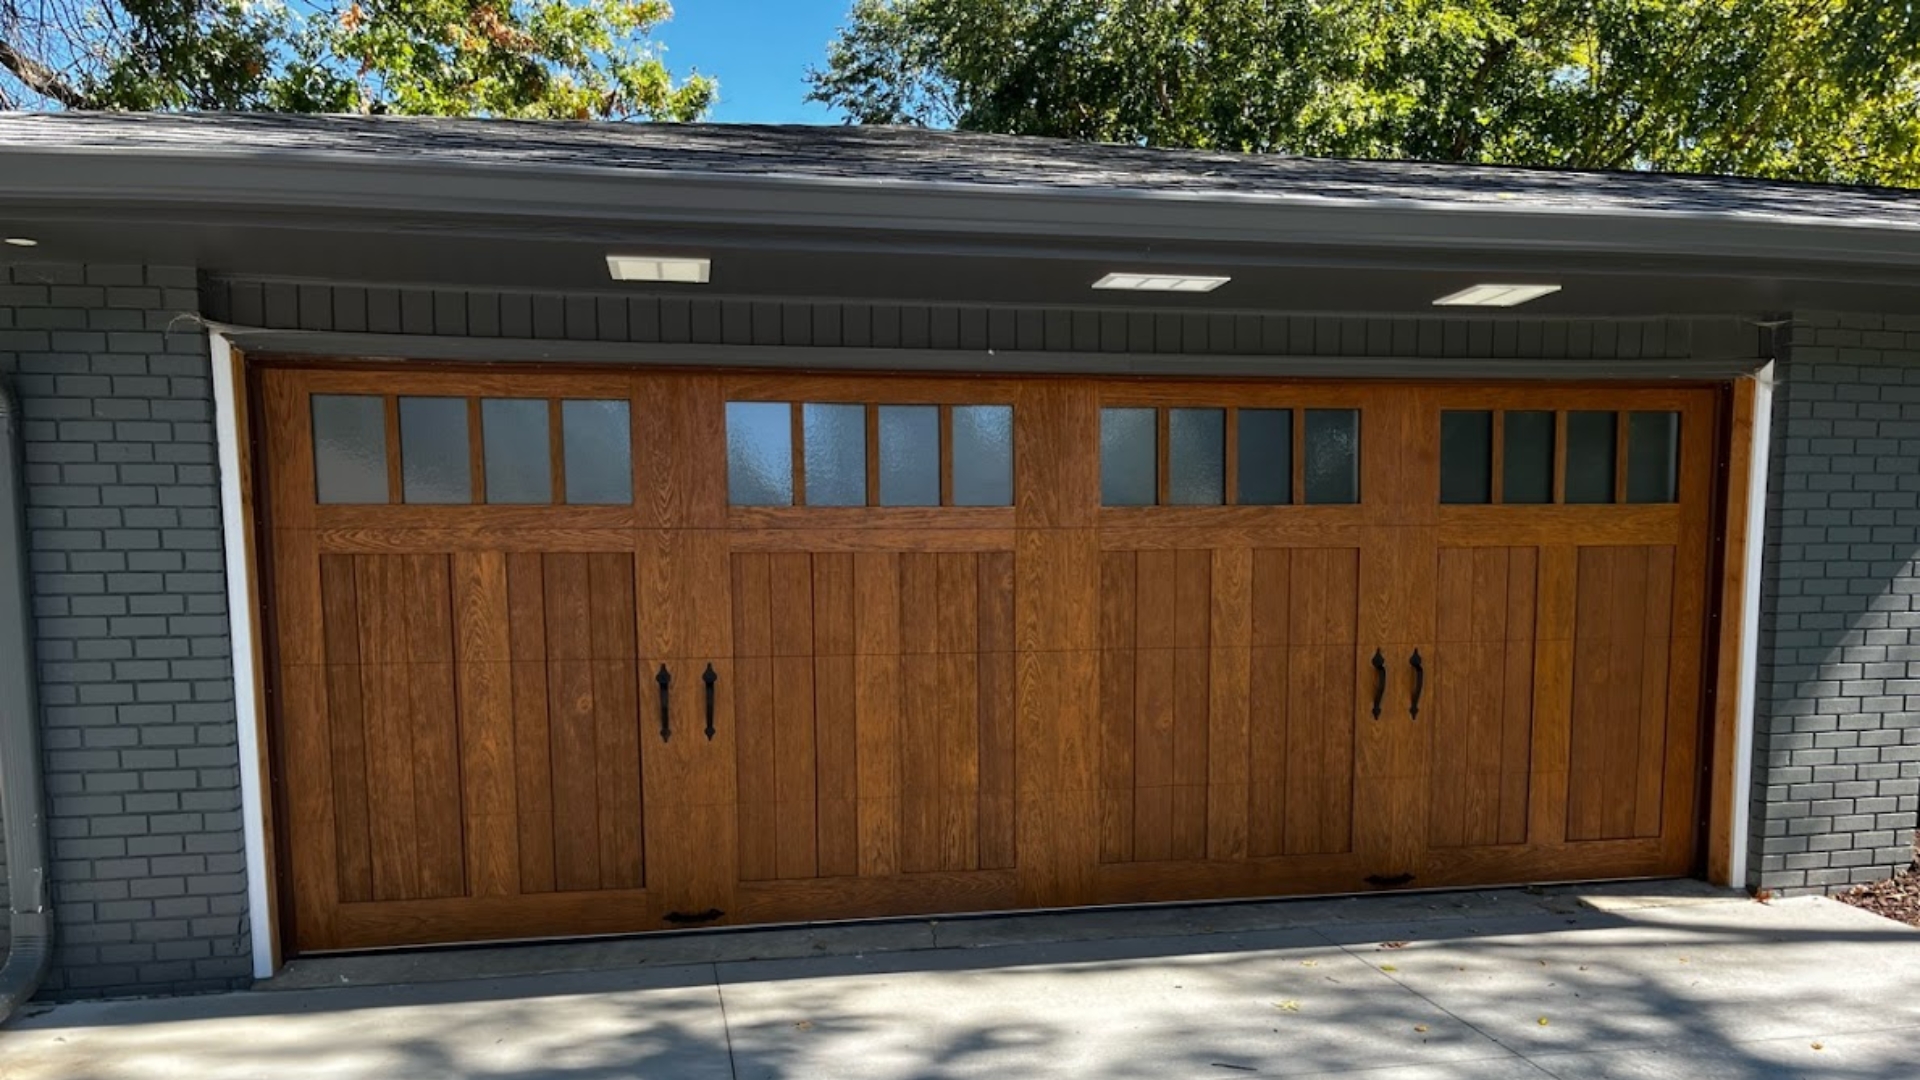 Wood composite doors with garage door windows